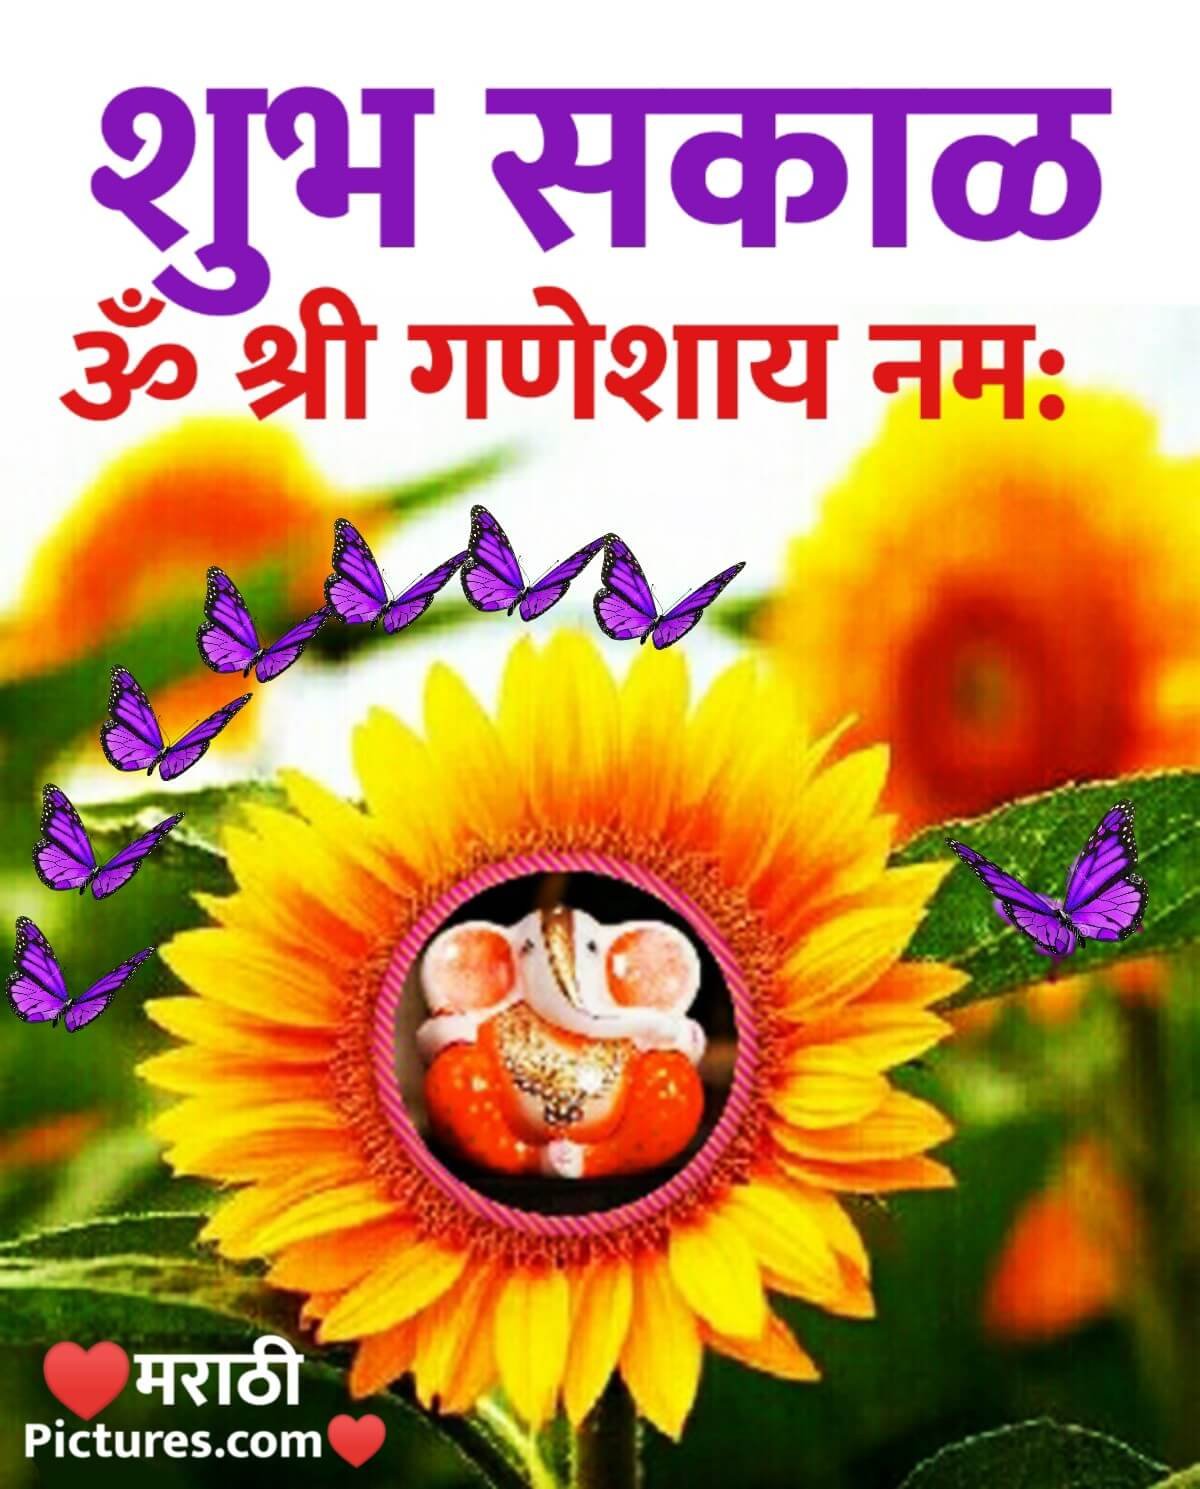 Shubh Sakal Om Shri Ganeshay Namah